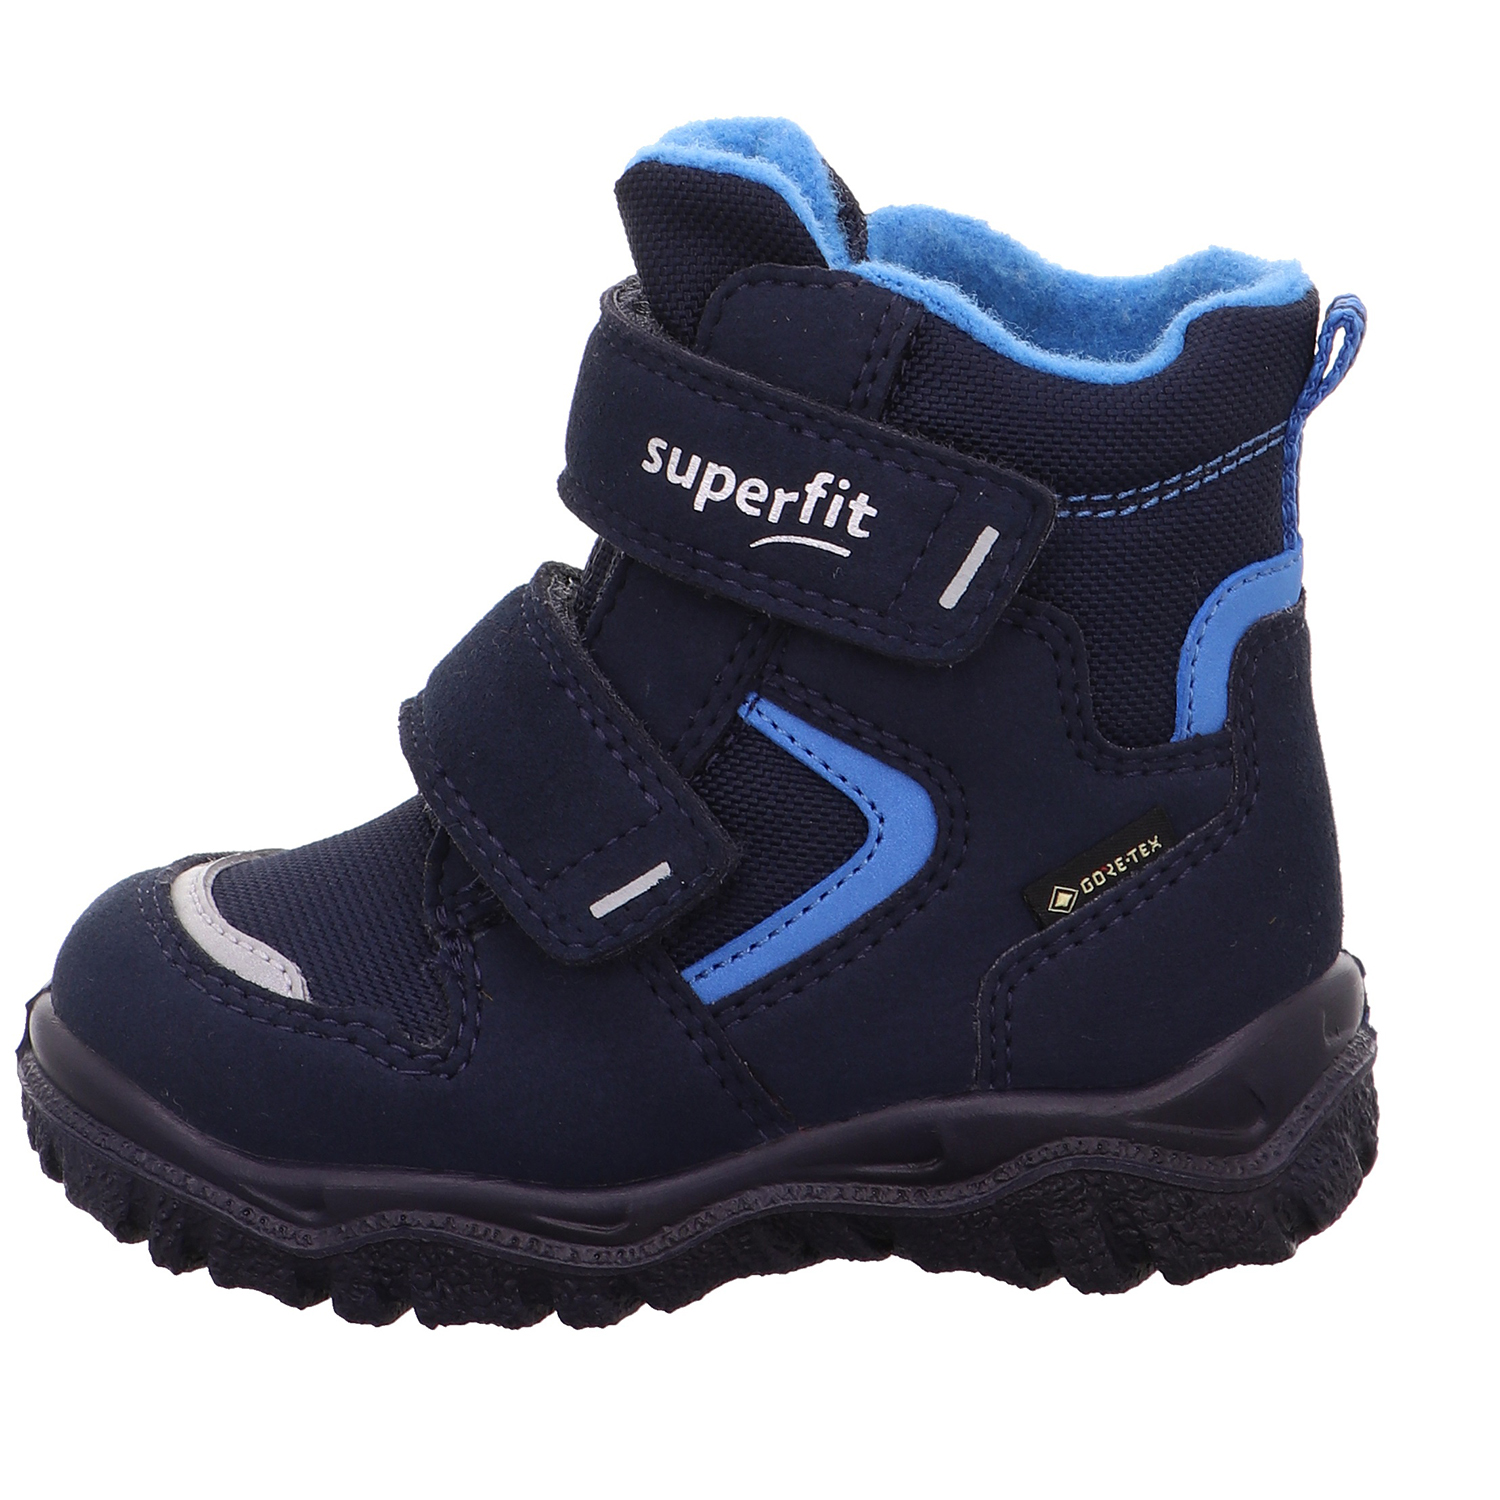 Ботинки SUPERFIT для мальчика SUPERFIT 1-000047-8000